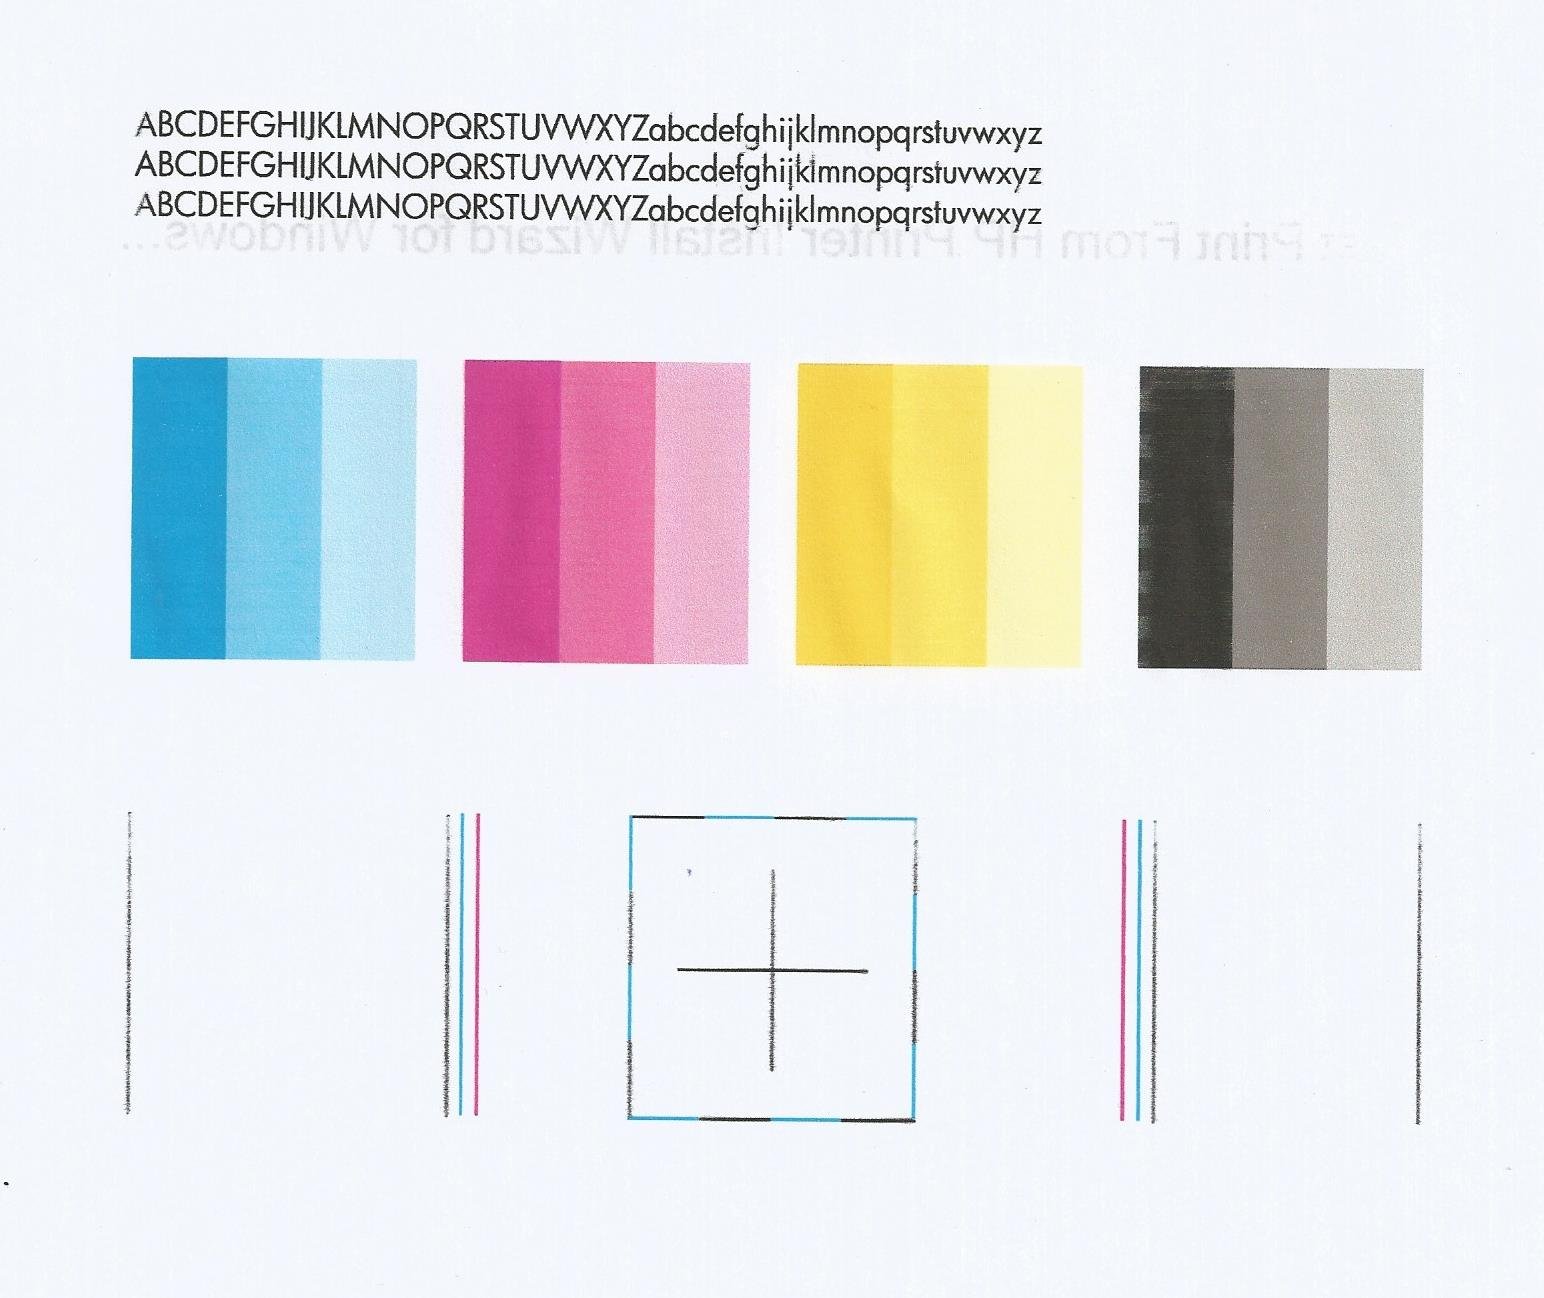 Печать цветных страниц. Тест принтера 4 цвета Epson. Тест печати струйного принтера Epson 4 цвета.